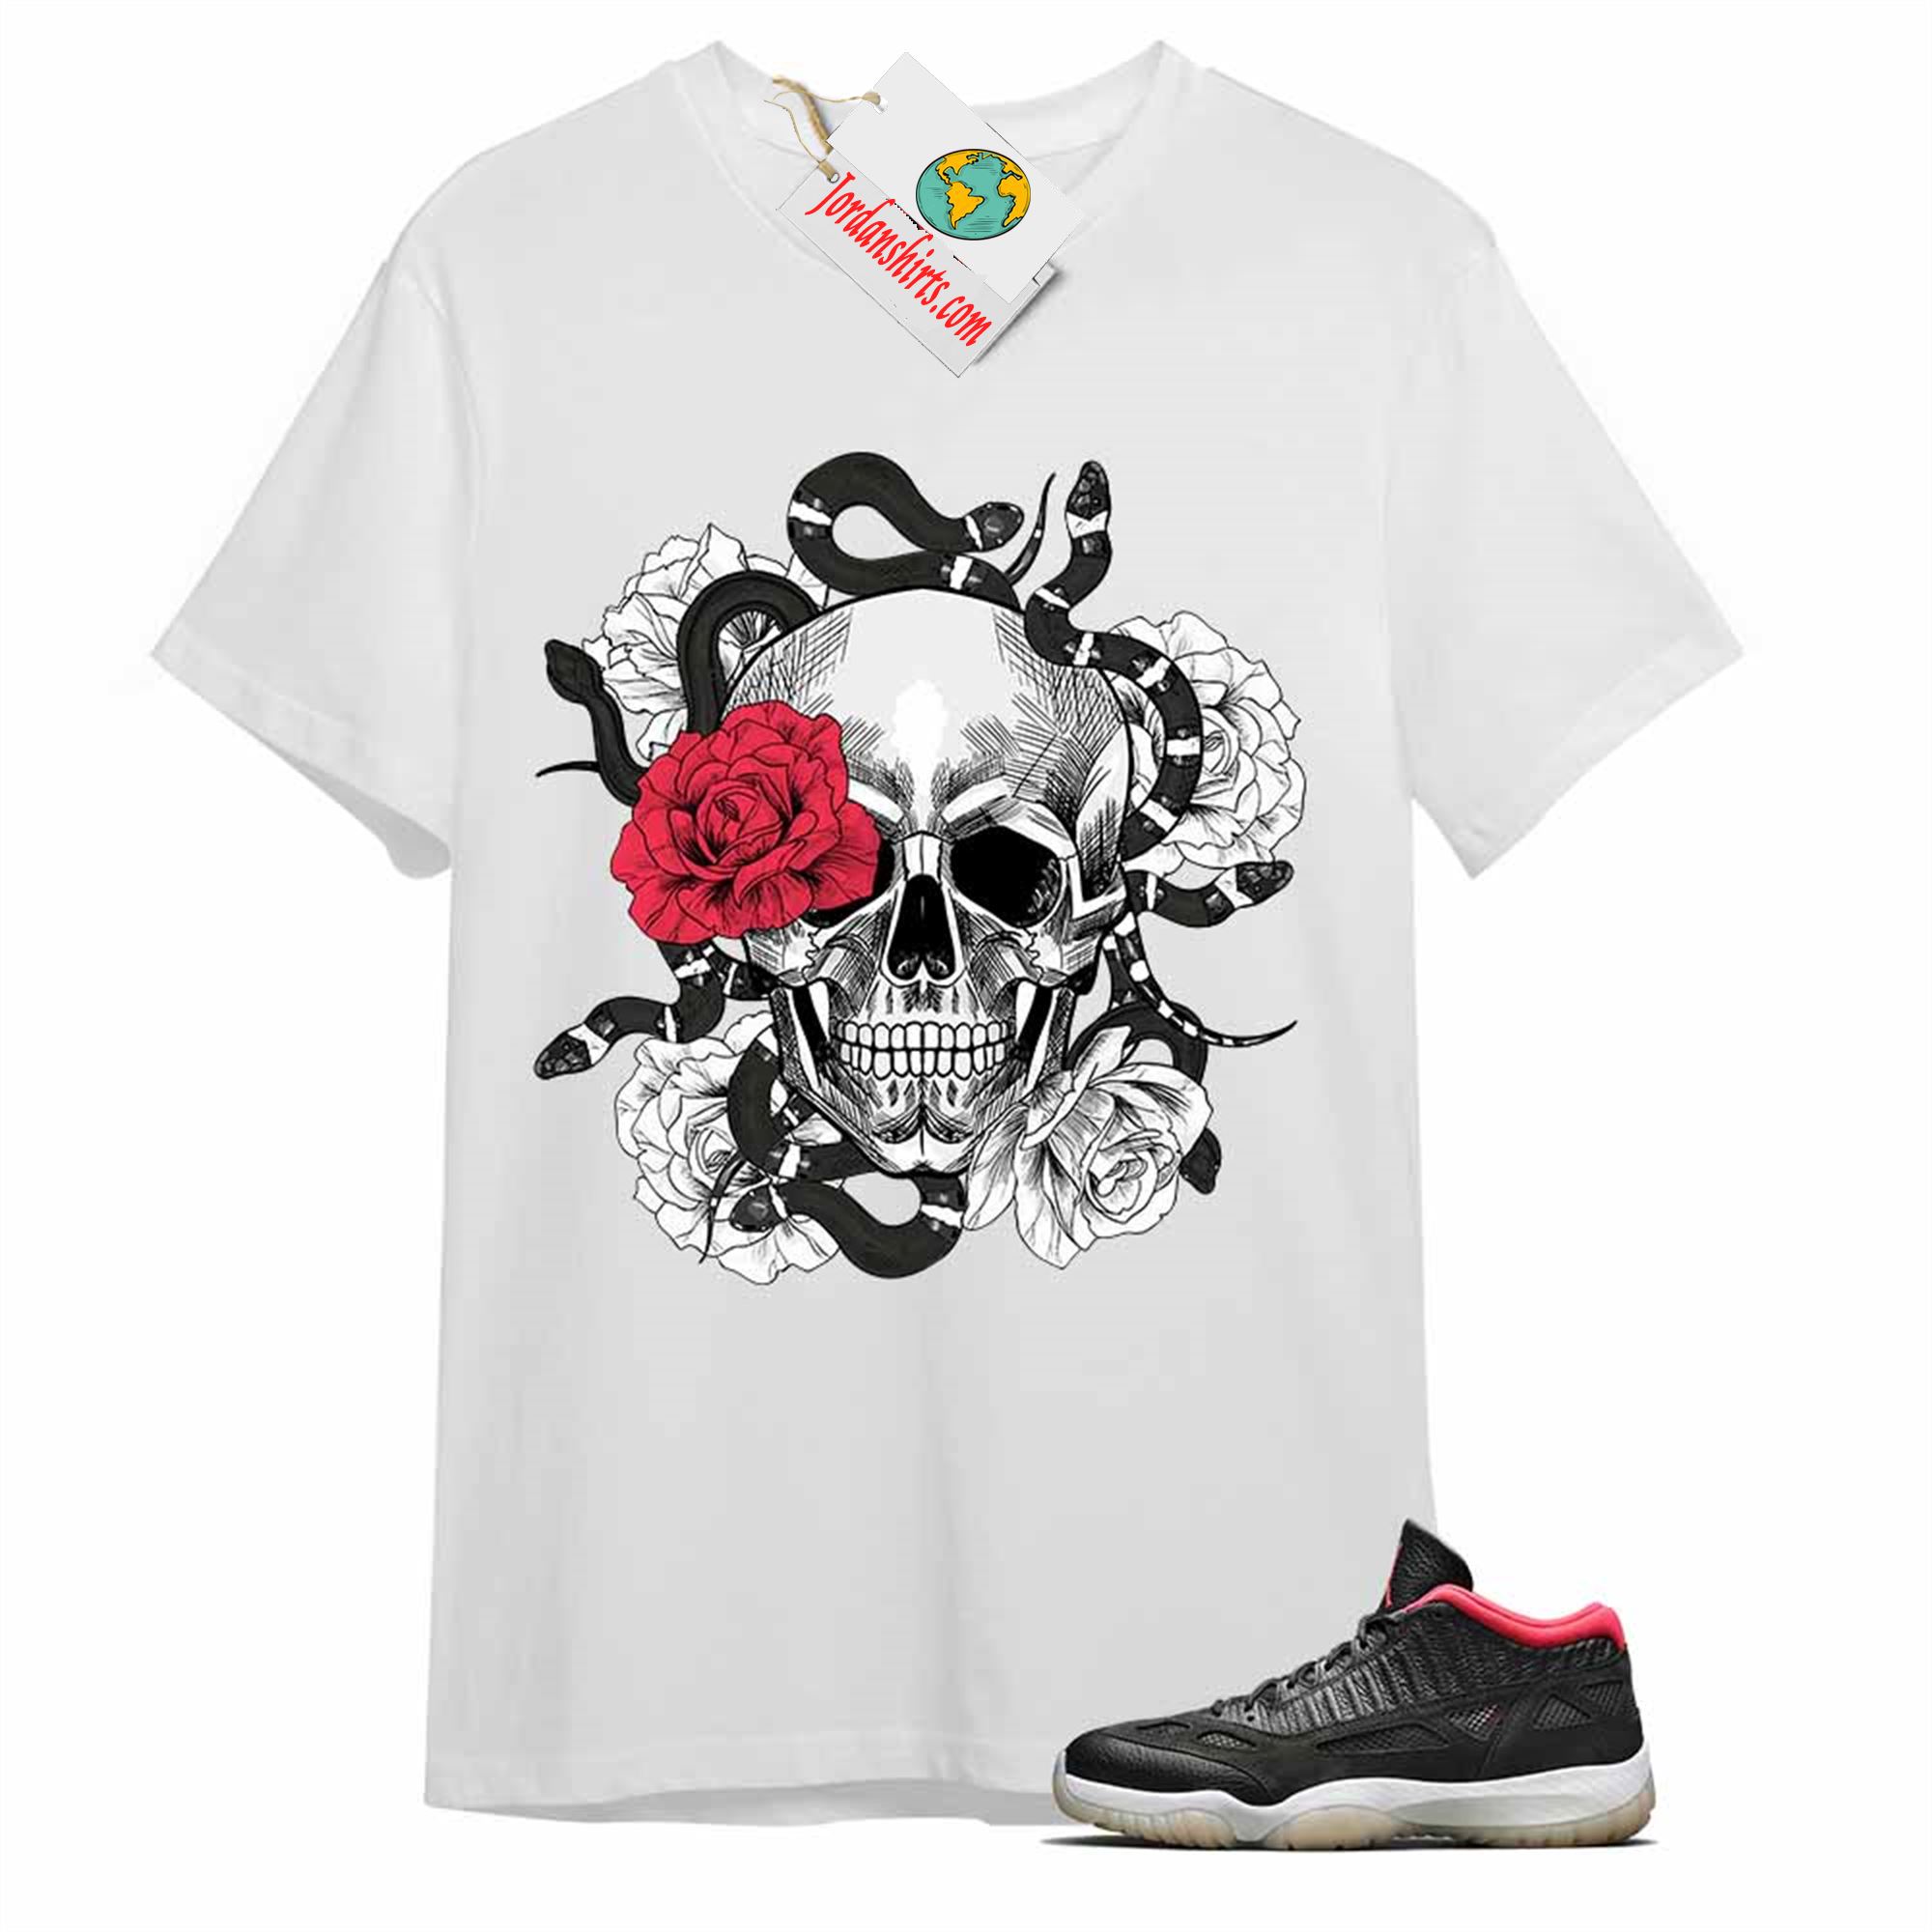 Jordan 11 Shirt, Snake Skull Rose White T-shirt Air Jordan 11 Bred 11s Full Size Up To 5xl